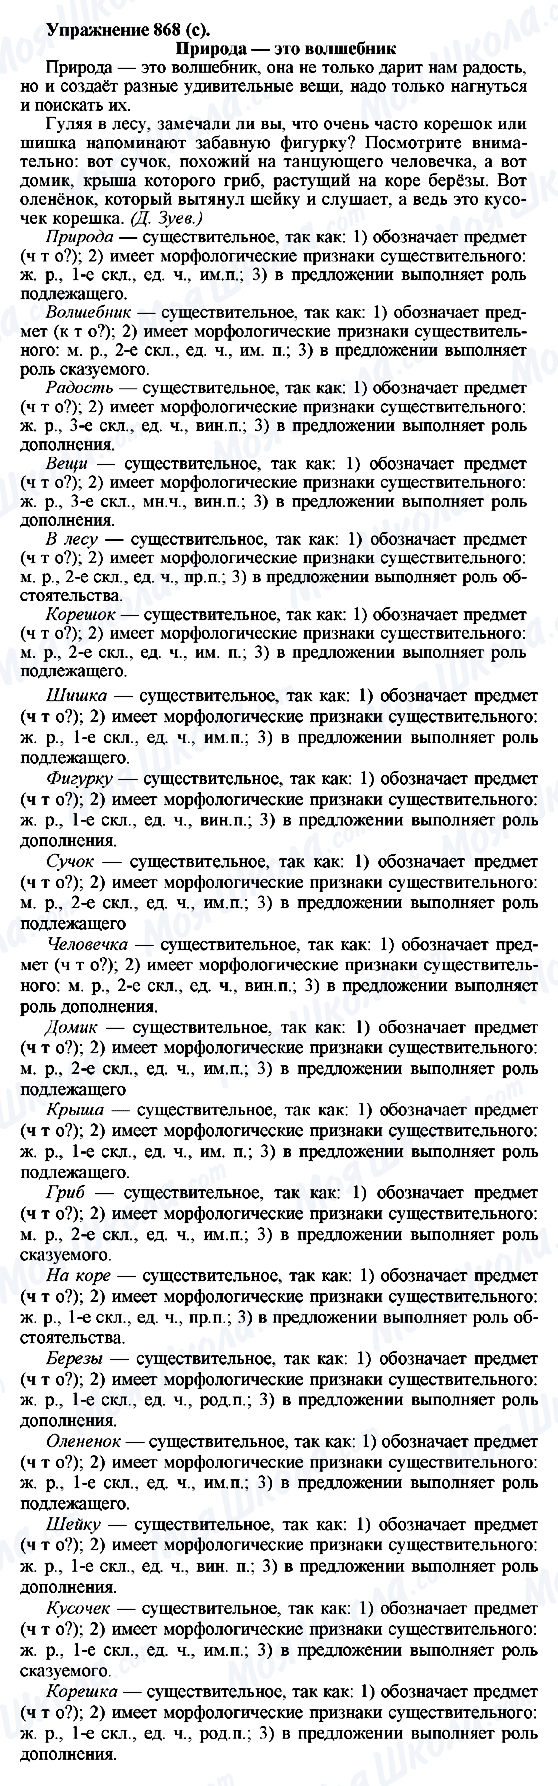 ГДЗ Русский язык 5 класс страница 868(с)